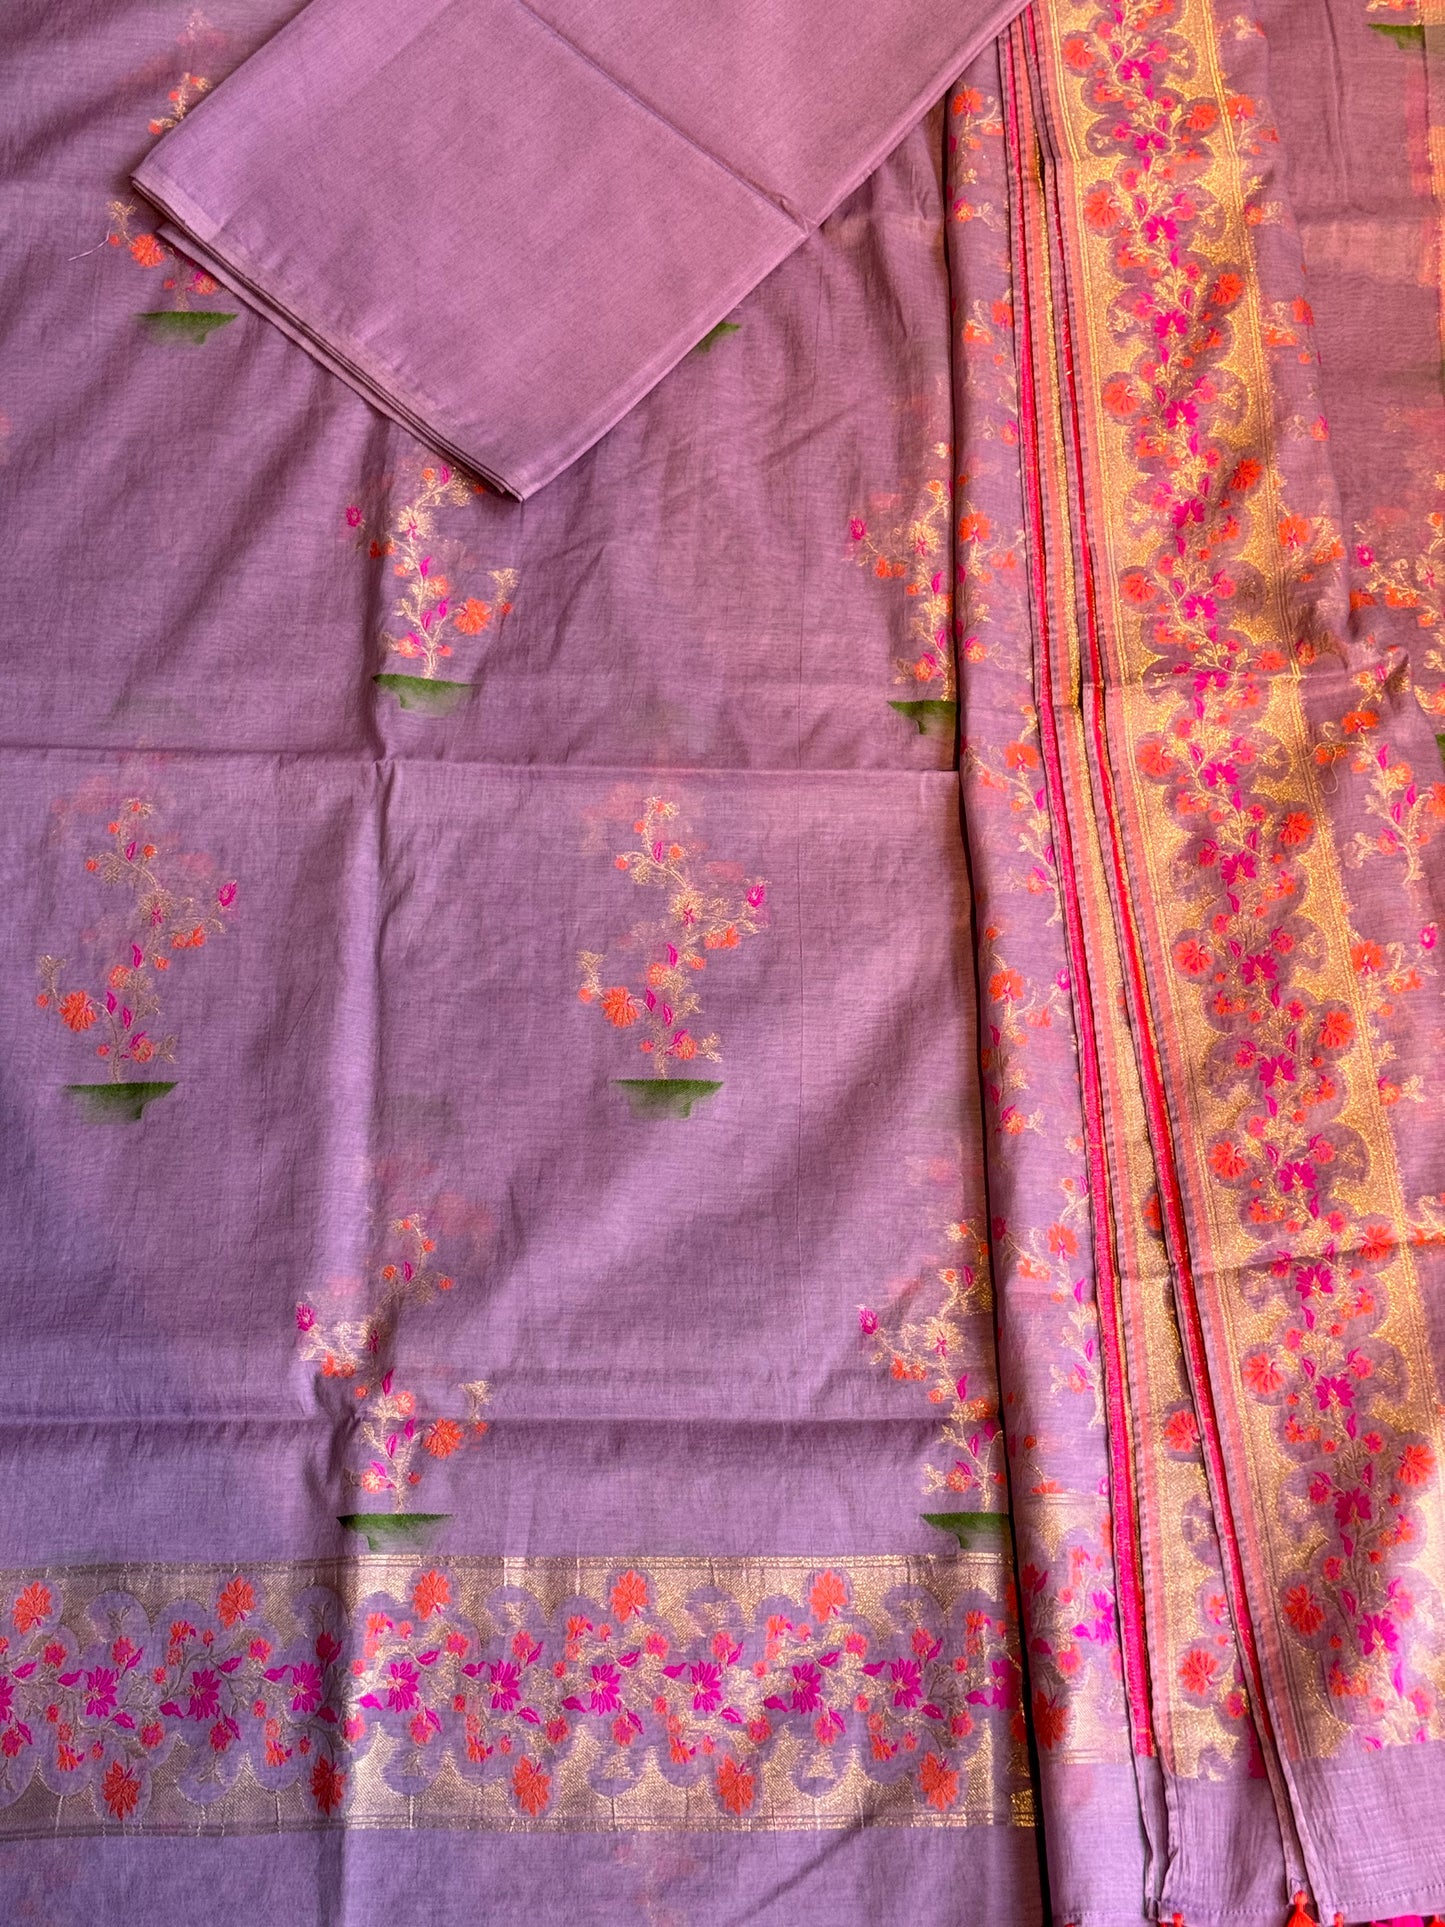 Lavender Banarasi cotton 3 piece unstitched suit set with floral patterns